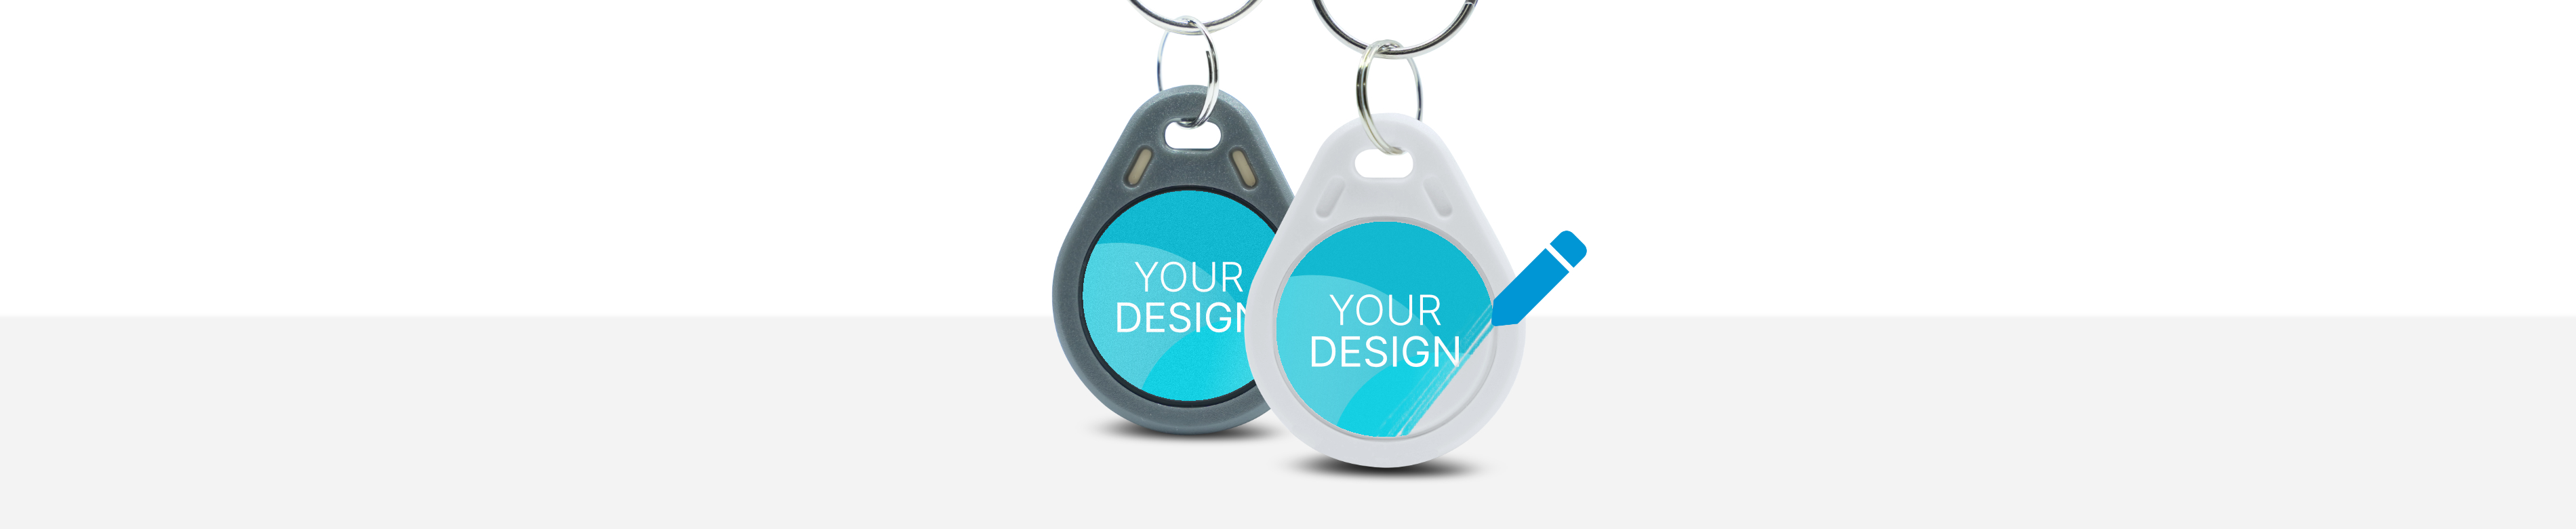 Zwei Schlüsselanhänger mit der Aufschrift "Your Design"